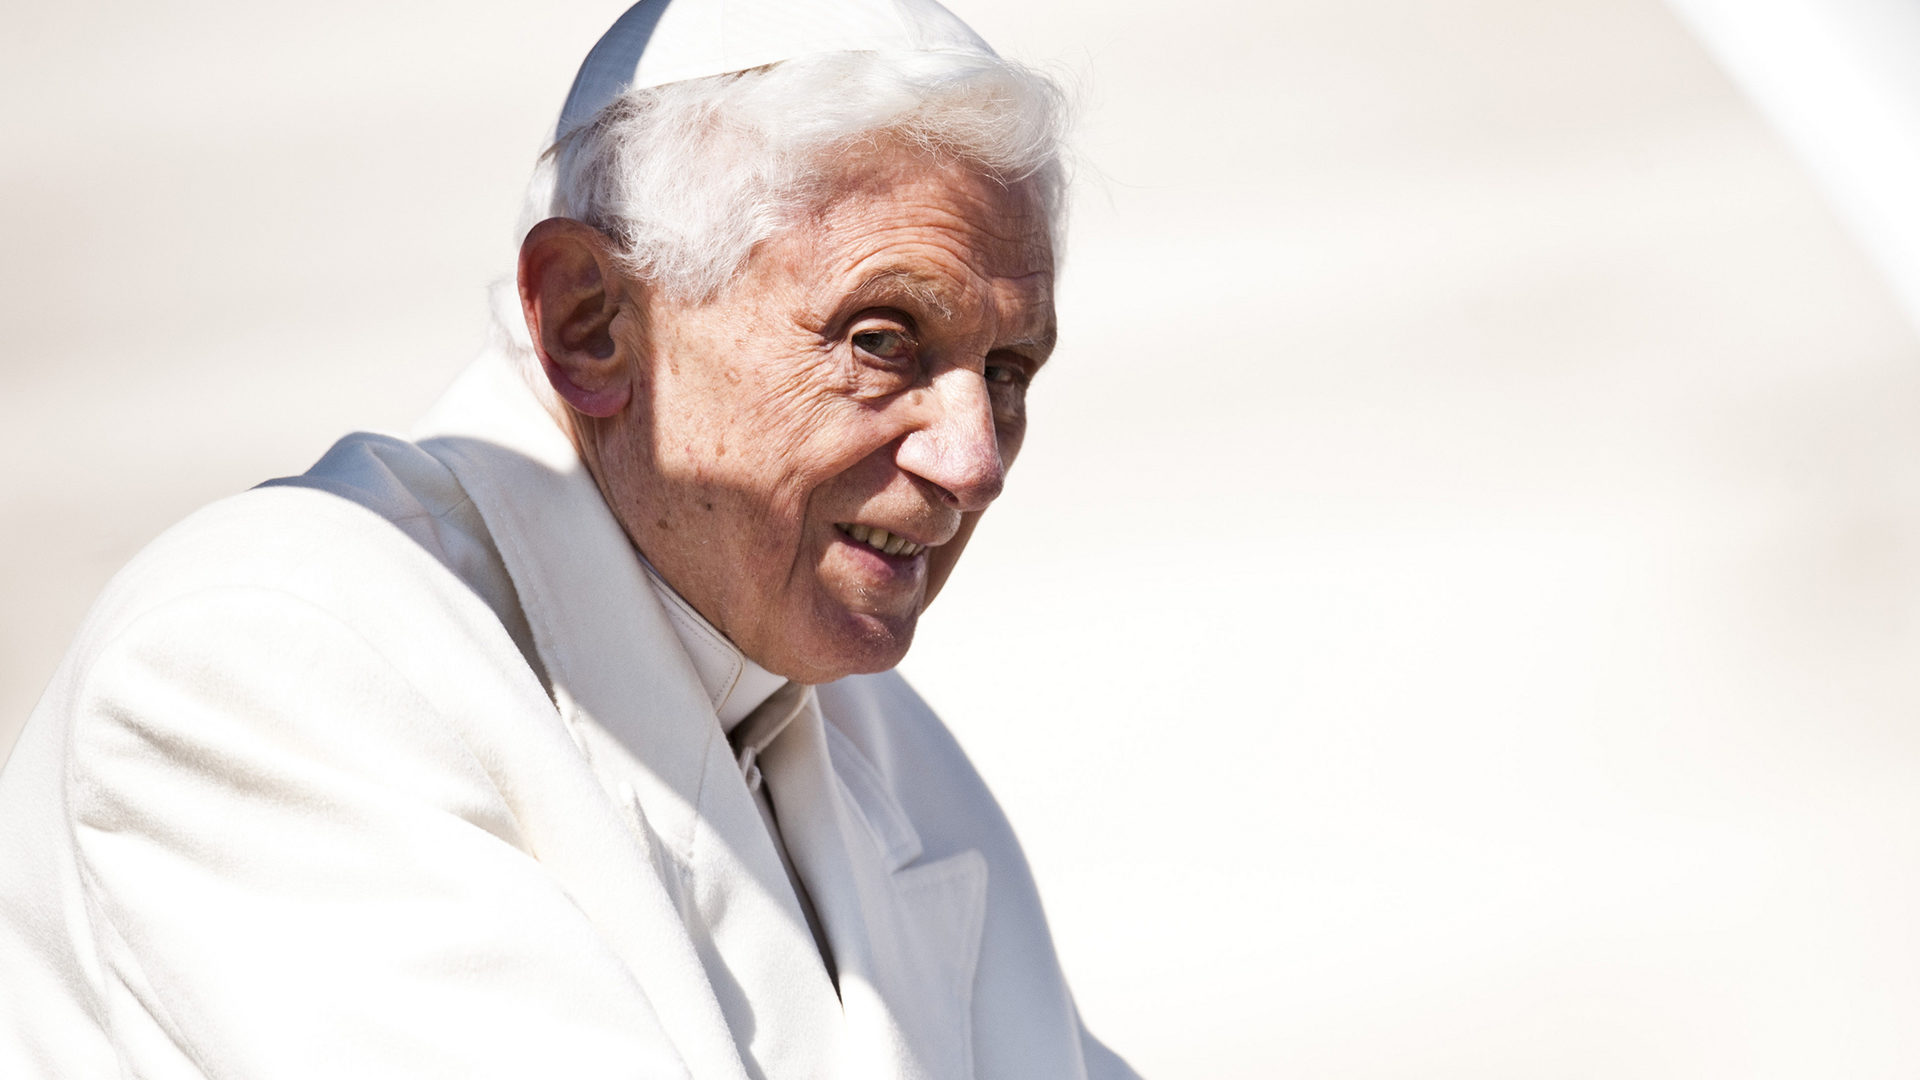 Né le jour du Samedi saint en 1927, Benoît XVI aura 93 ans le 16 avril 2020 (Photo: flickr/catholicism/CC BY-NC-SA 2.0)